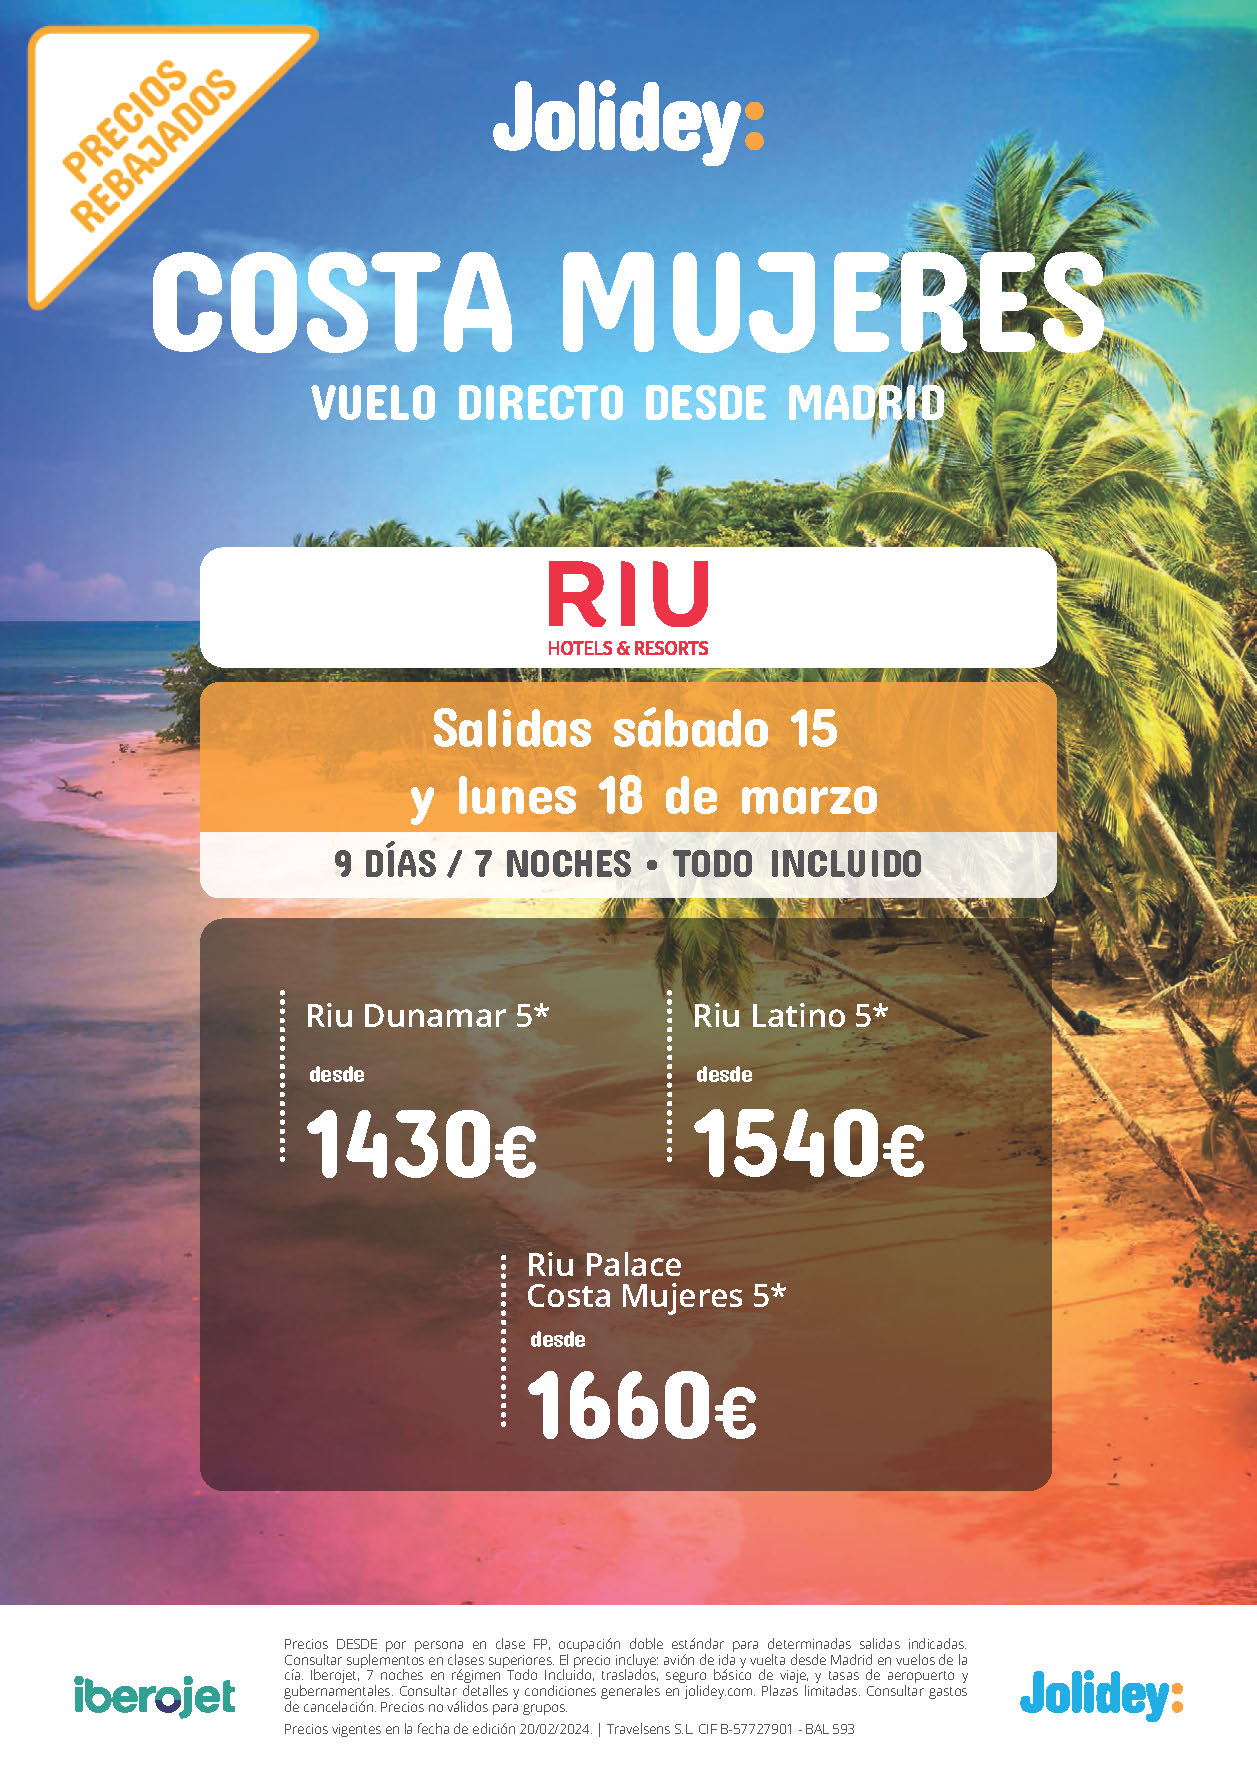 Oferta Jolidey Estancia en Costa Mujeres Mexico 9 dias Hotel Riu 5 estrellas Todo Incluido salidas Marzo 2024 en vuelo directo desde Madrid